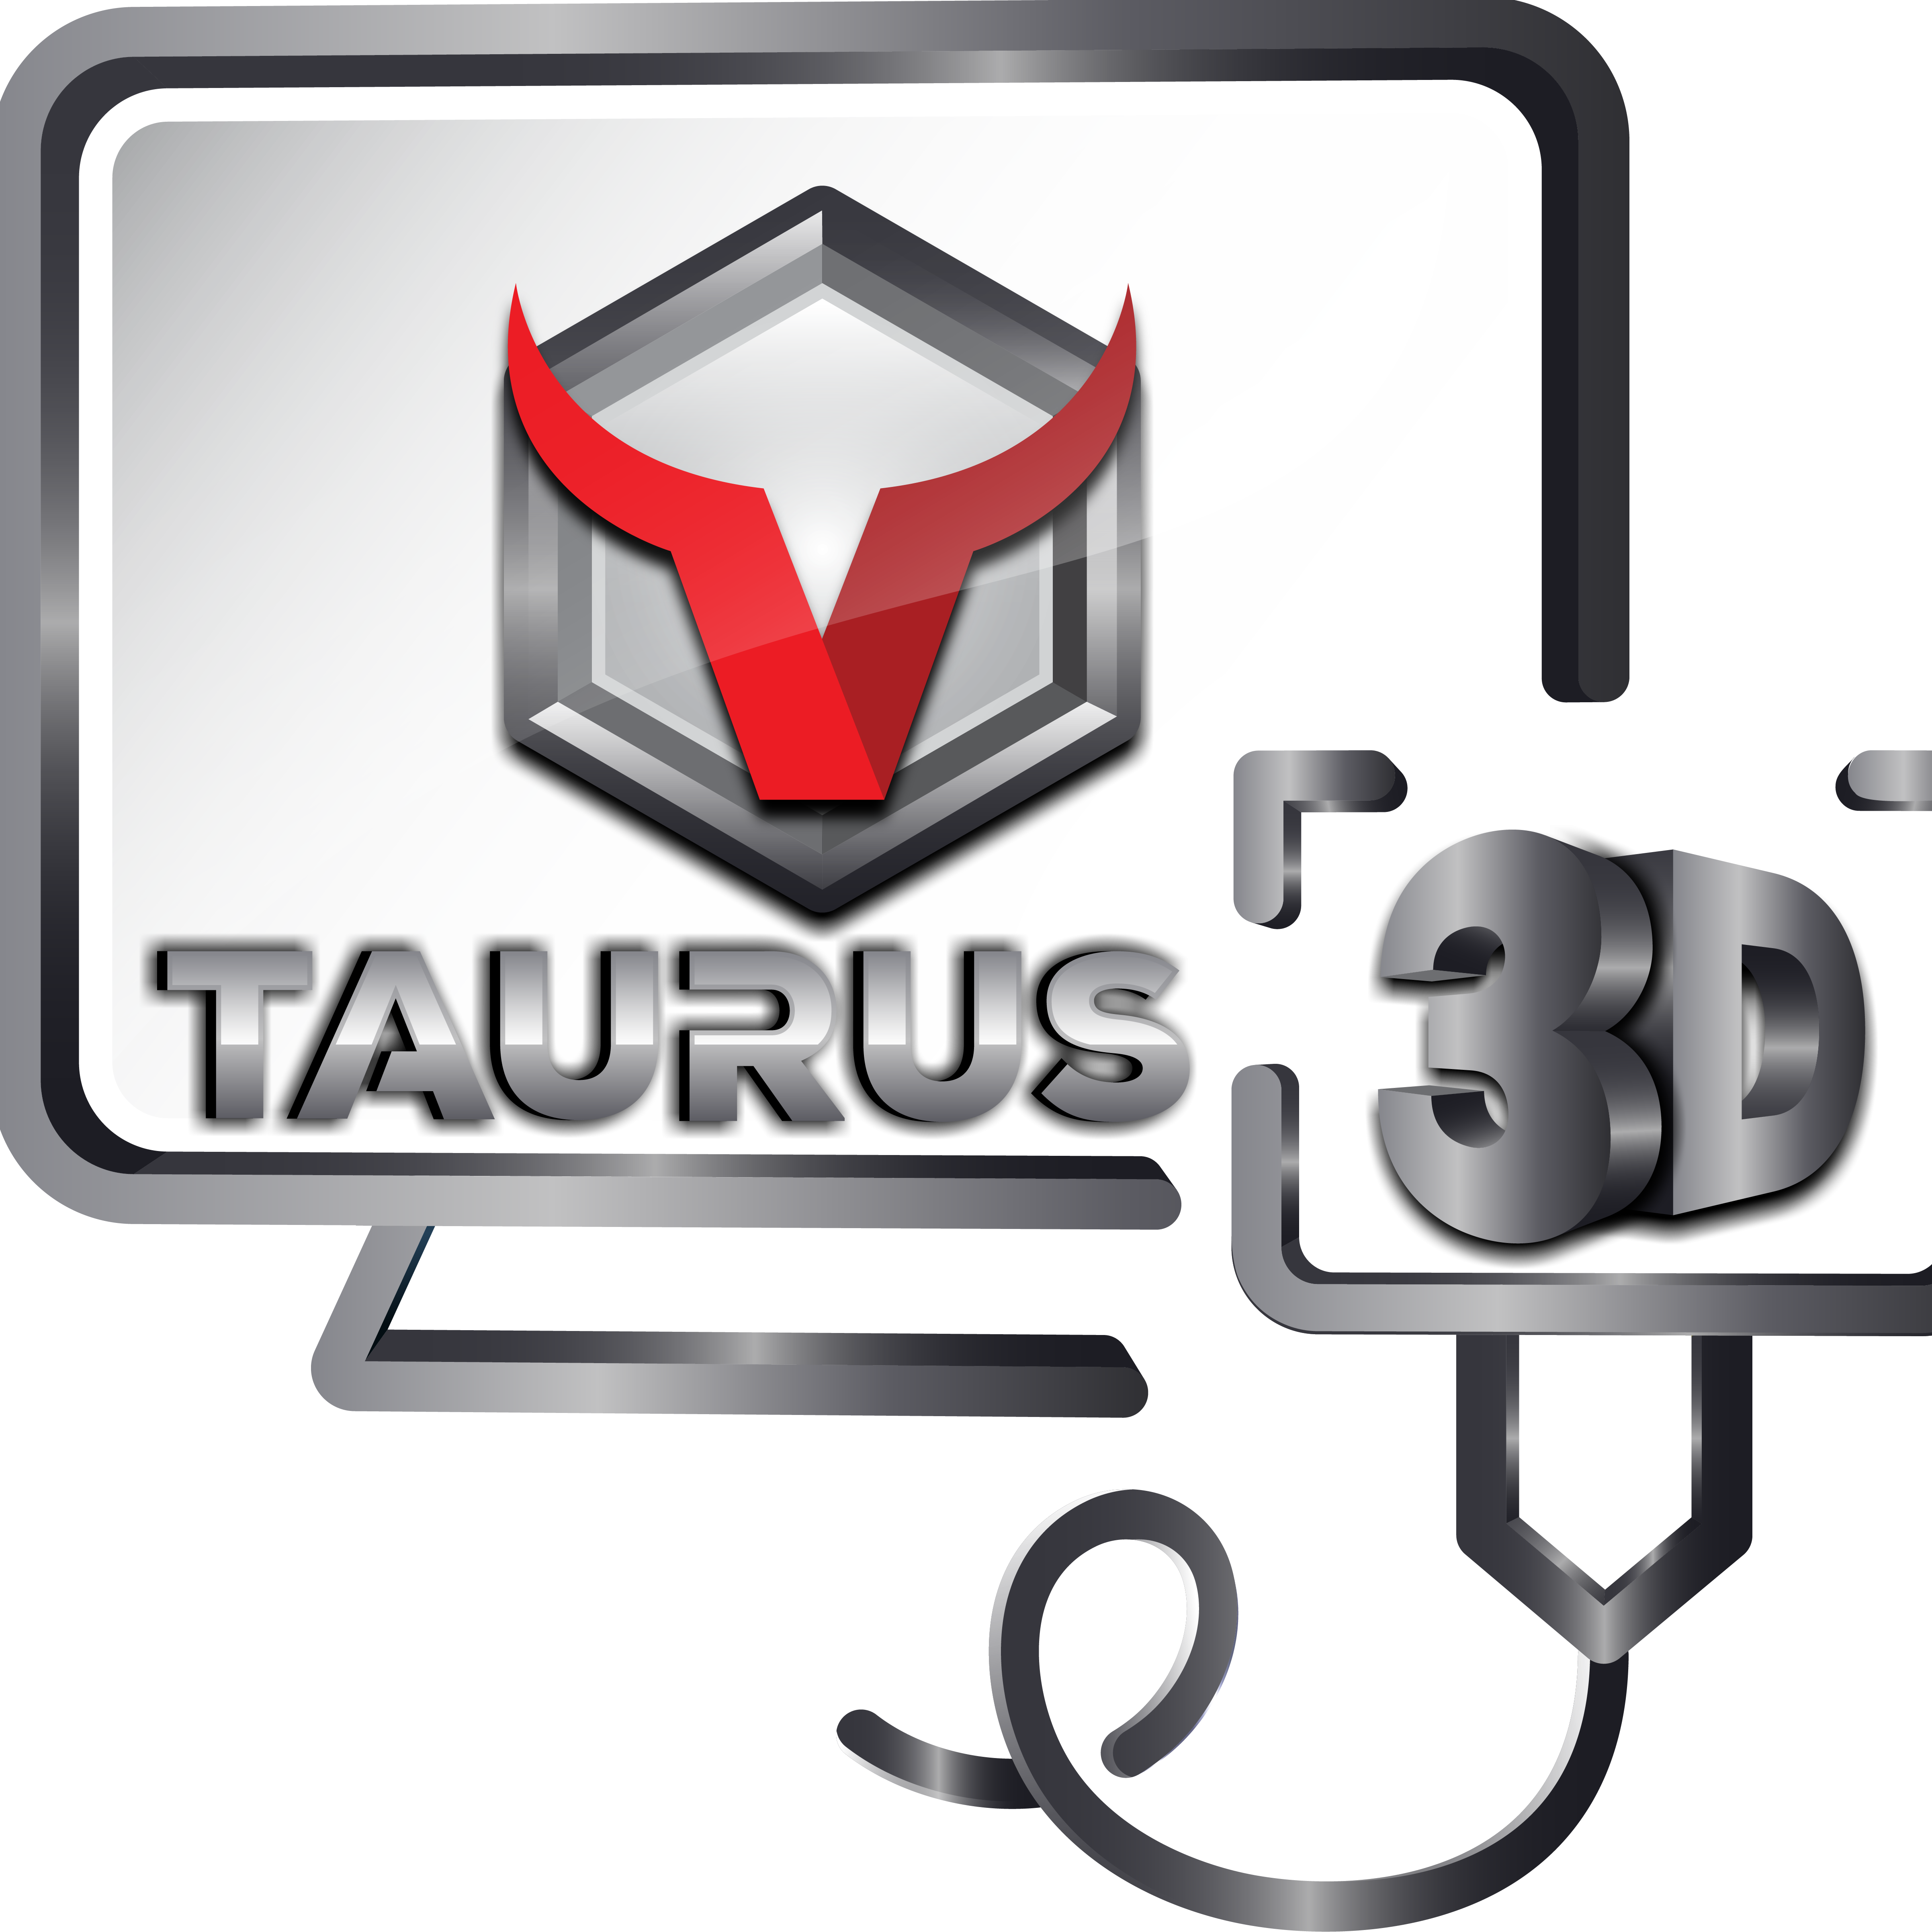 Taurus3D